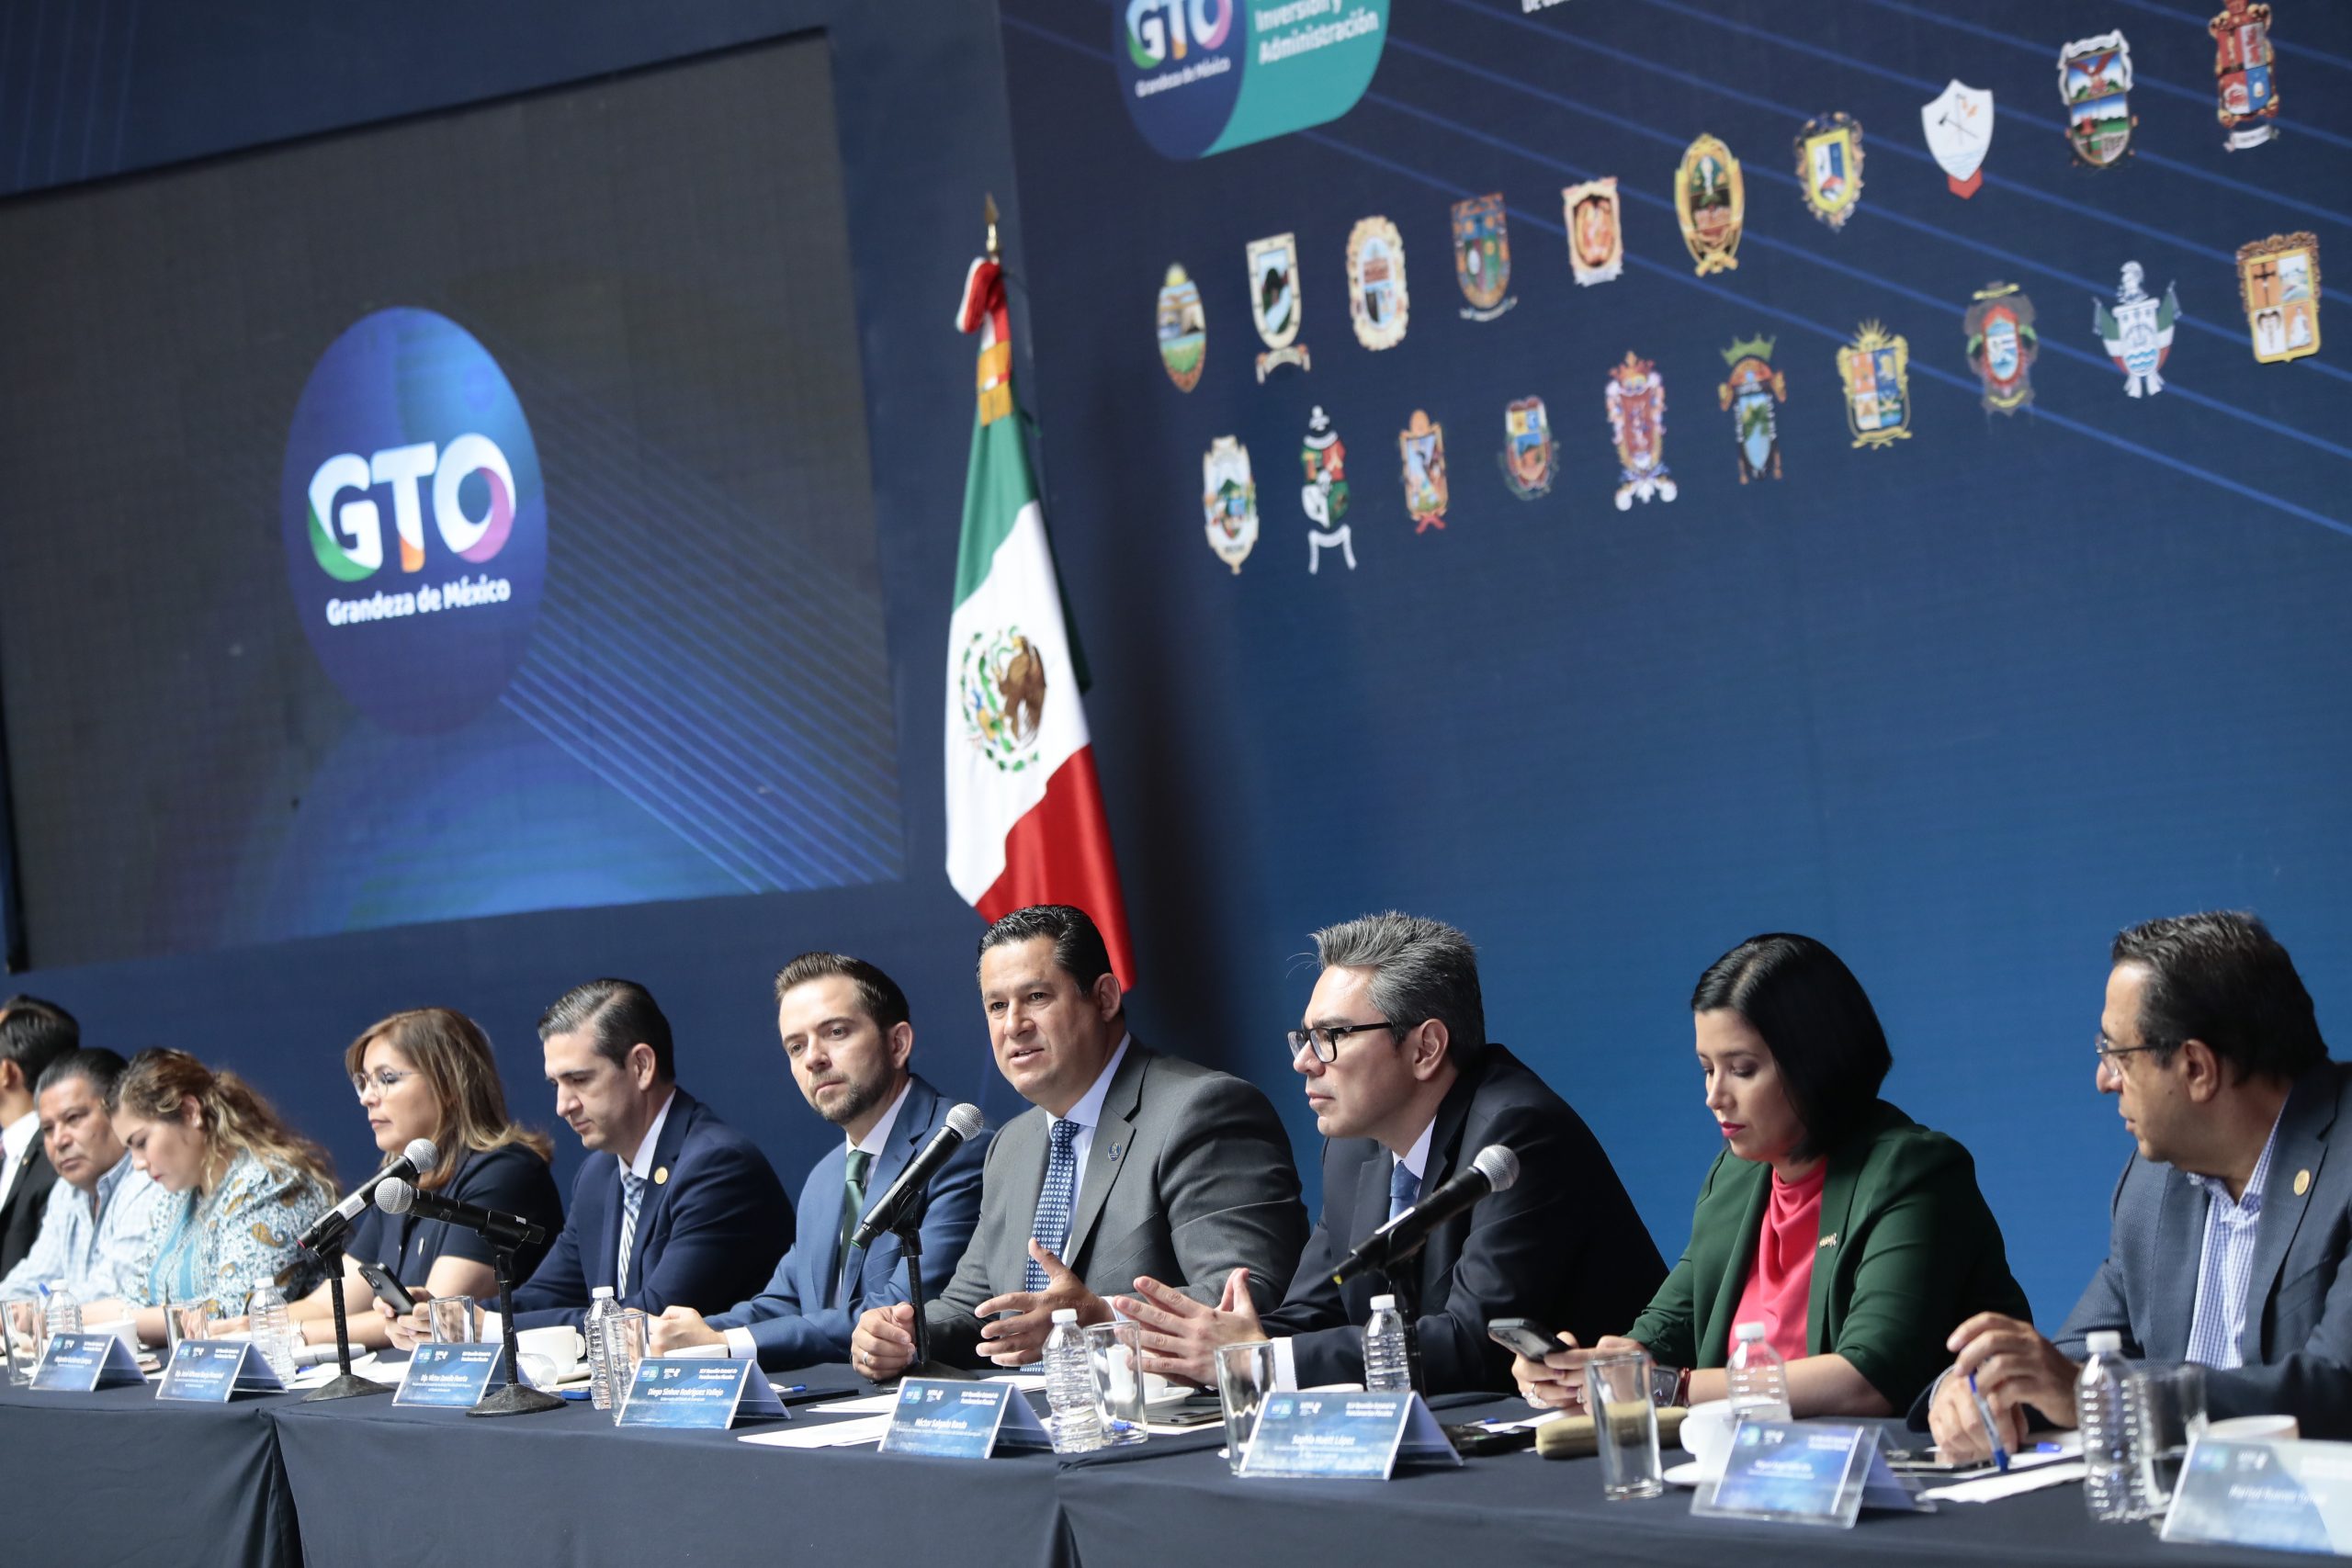 Impulsa Guanajuato el fortalecimiento de finanzas públicas municipales